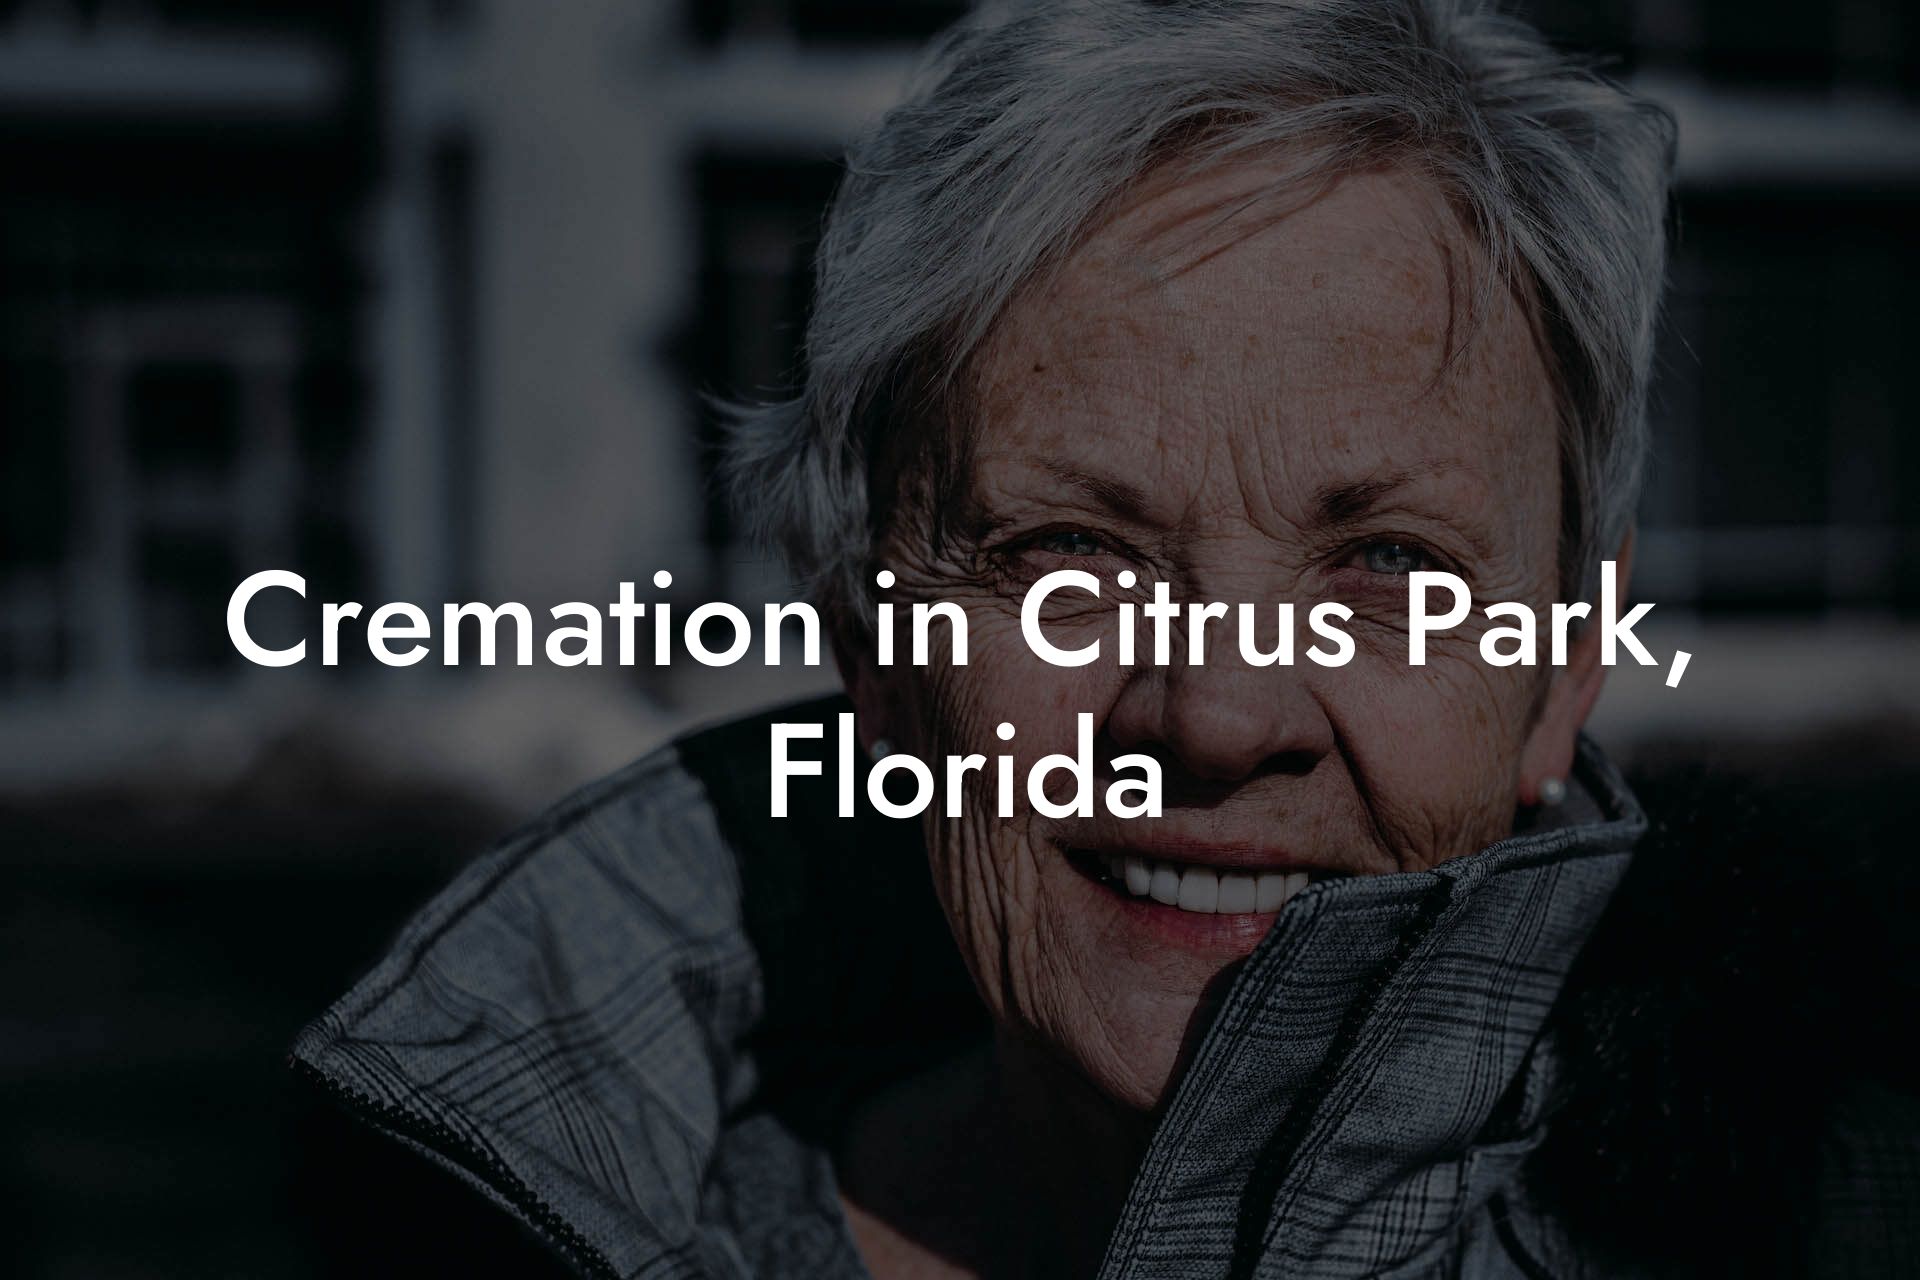 Cremation in Citrus Park, Florida